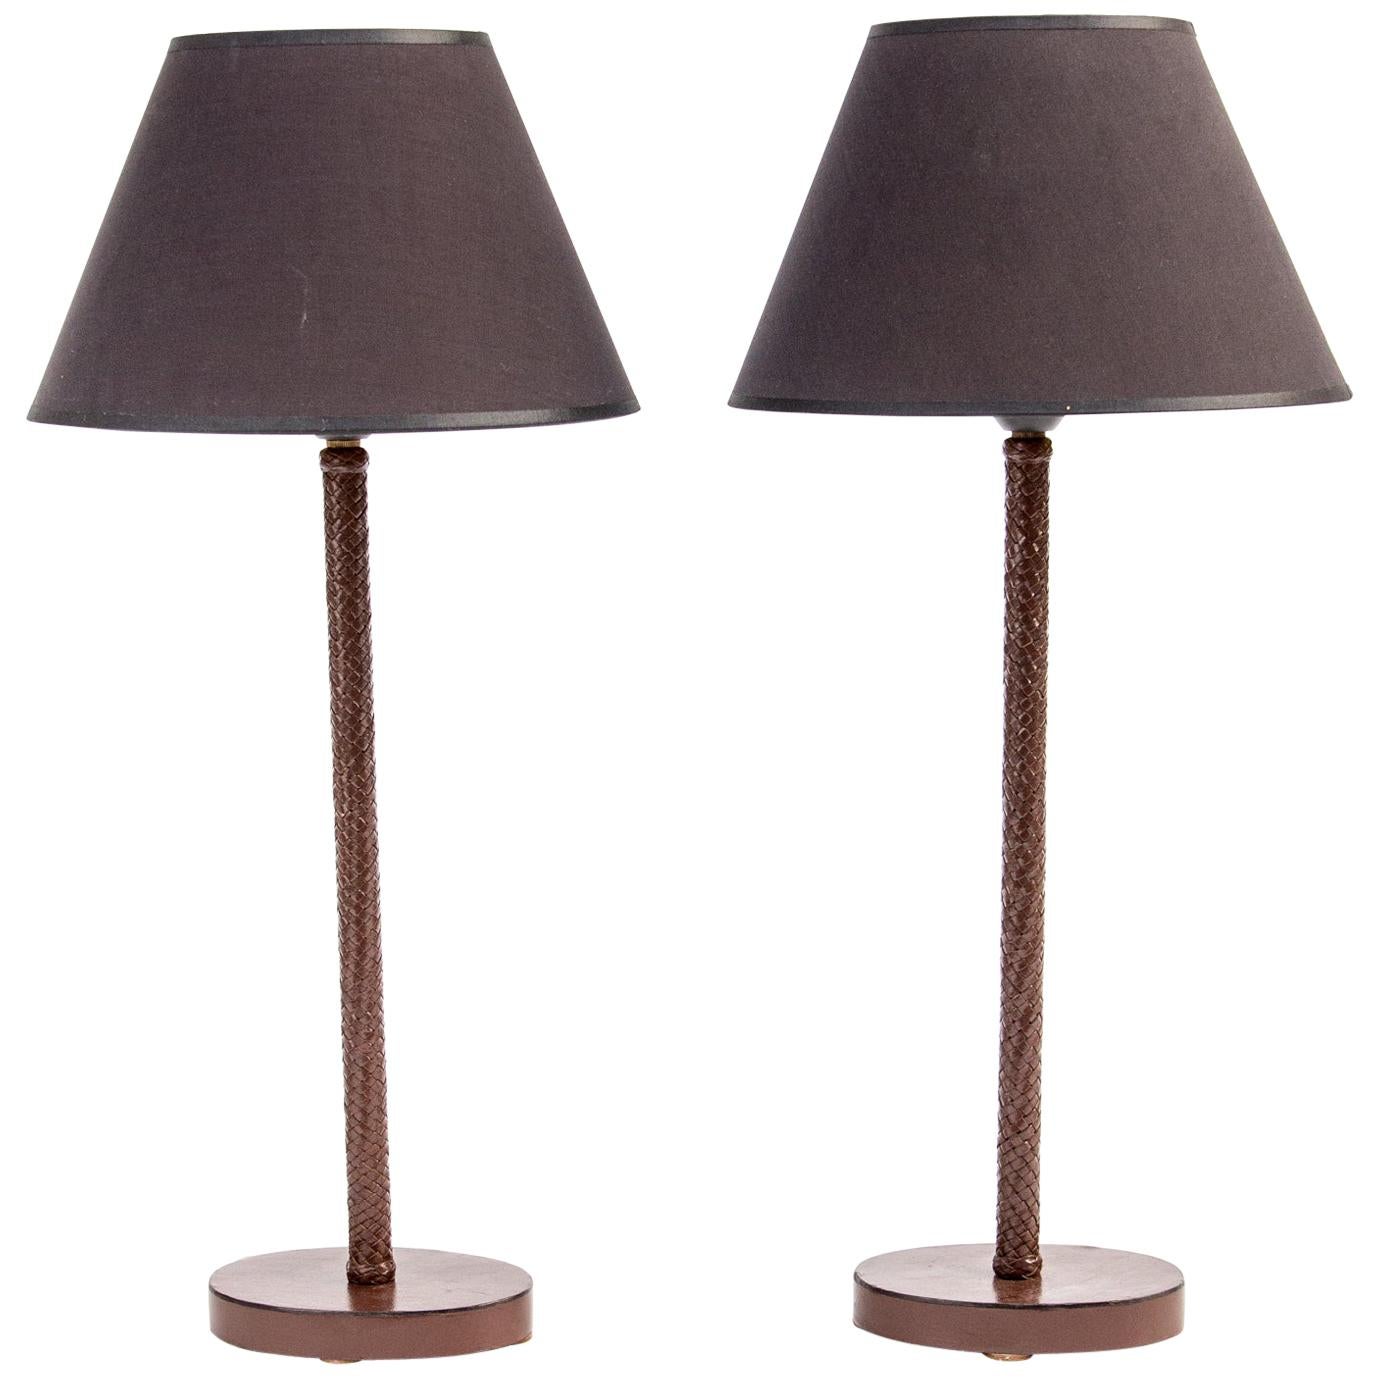 Pair of Bottega Veneta Table Lamps. Leather Braid